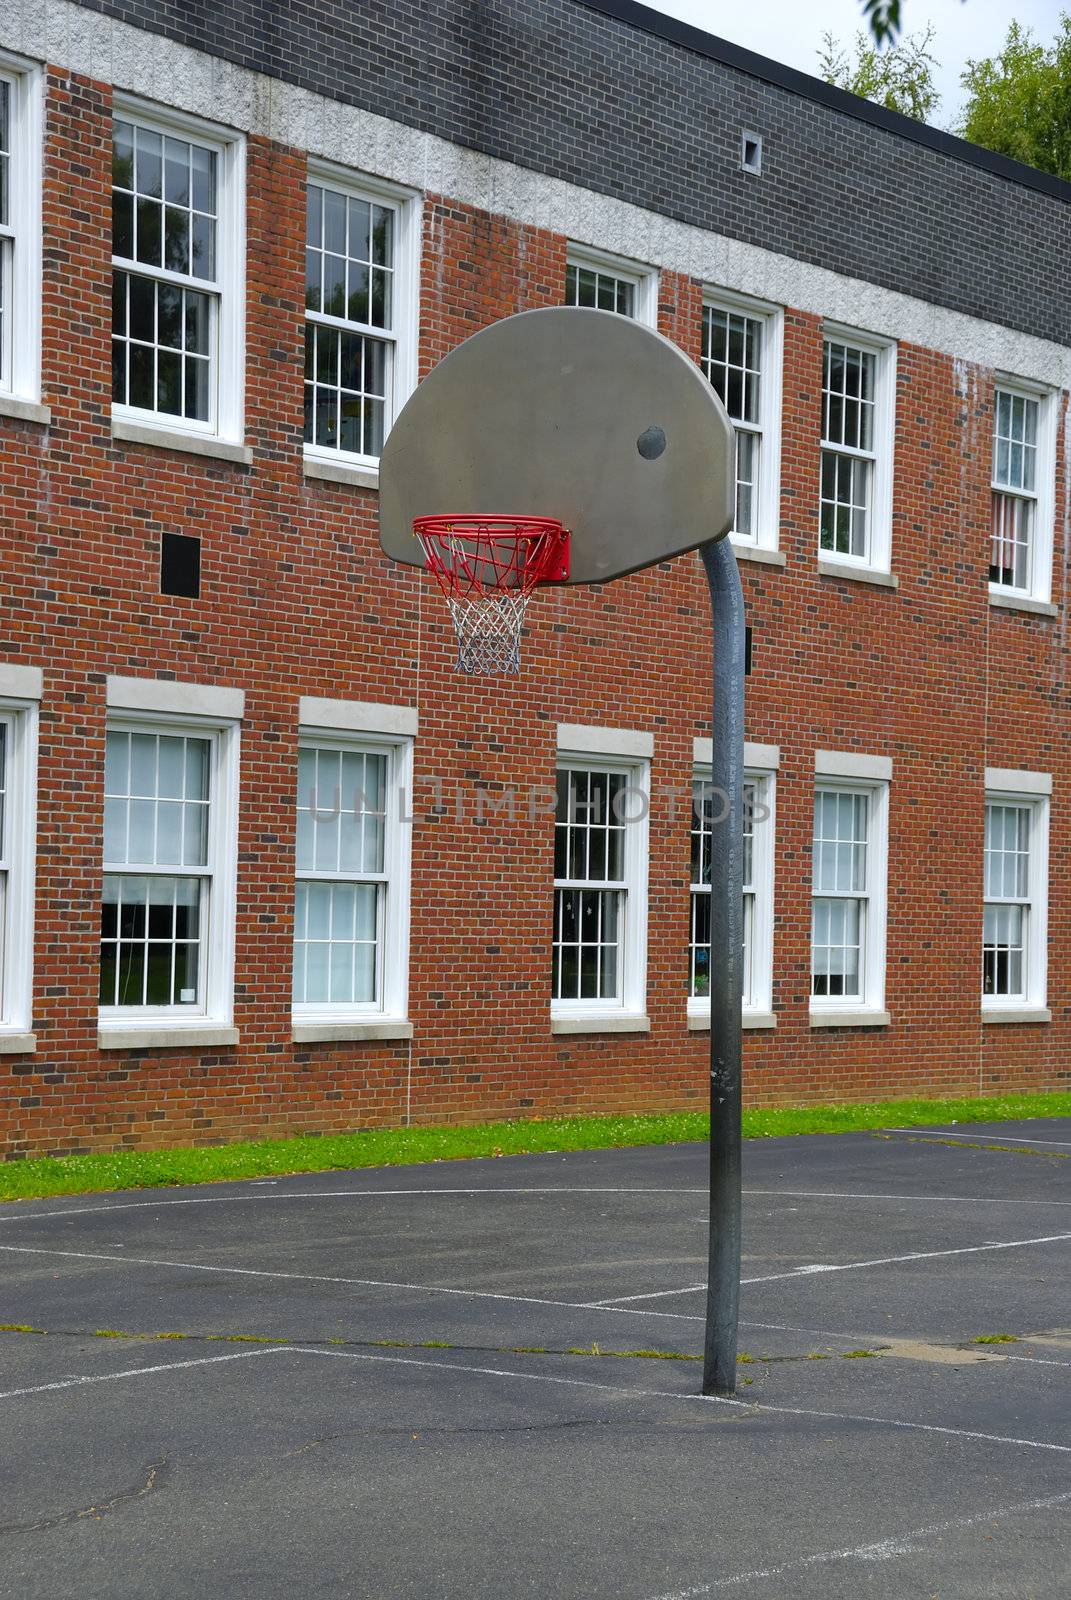 An open basket ball court in an old school